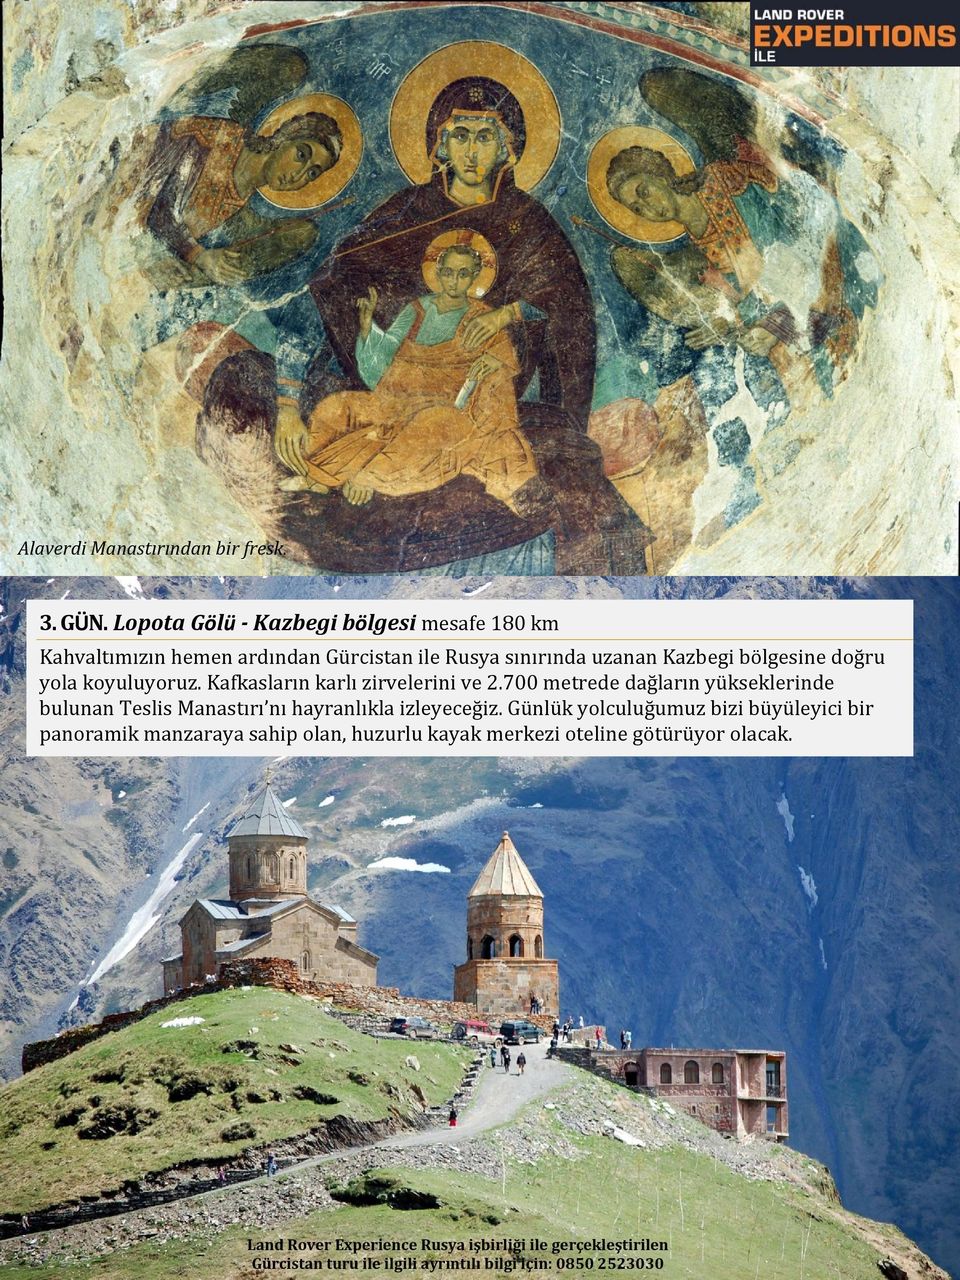 koyuluyoruz. Kafkasların karlı zirvelerini ve 2.700 metrede dağların yükseklerinde bulunan Teslis Manastırı nı hayranlıkla izleyeceğiz.